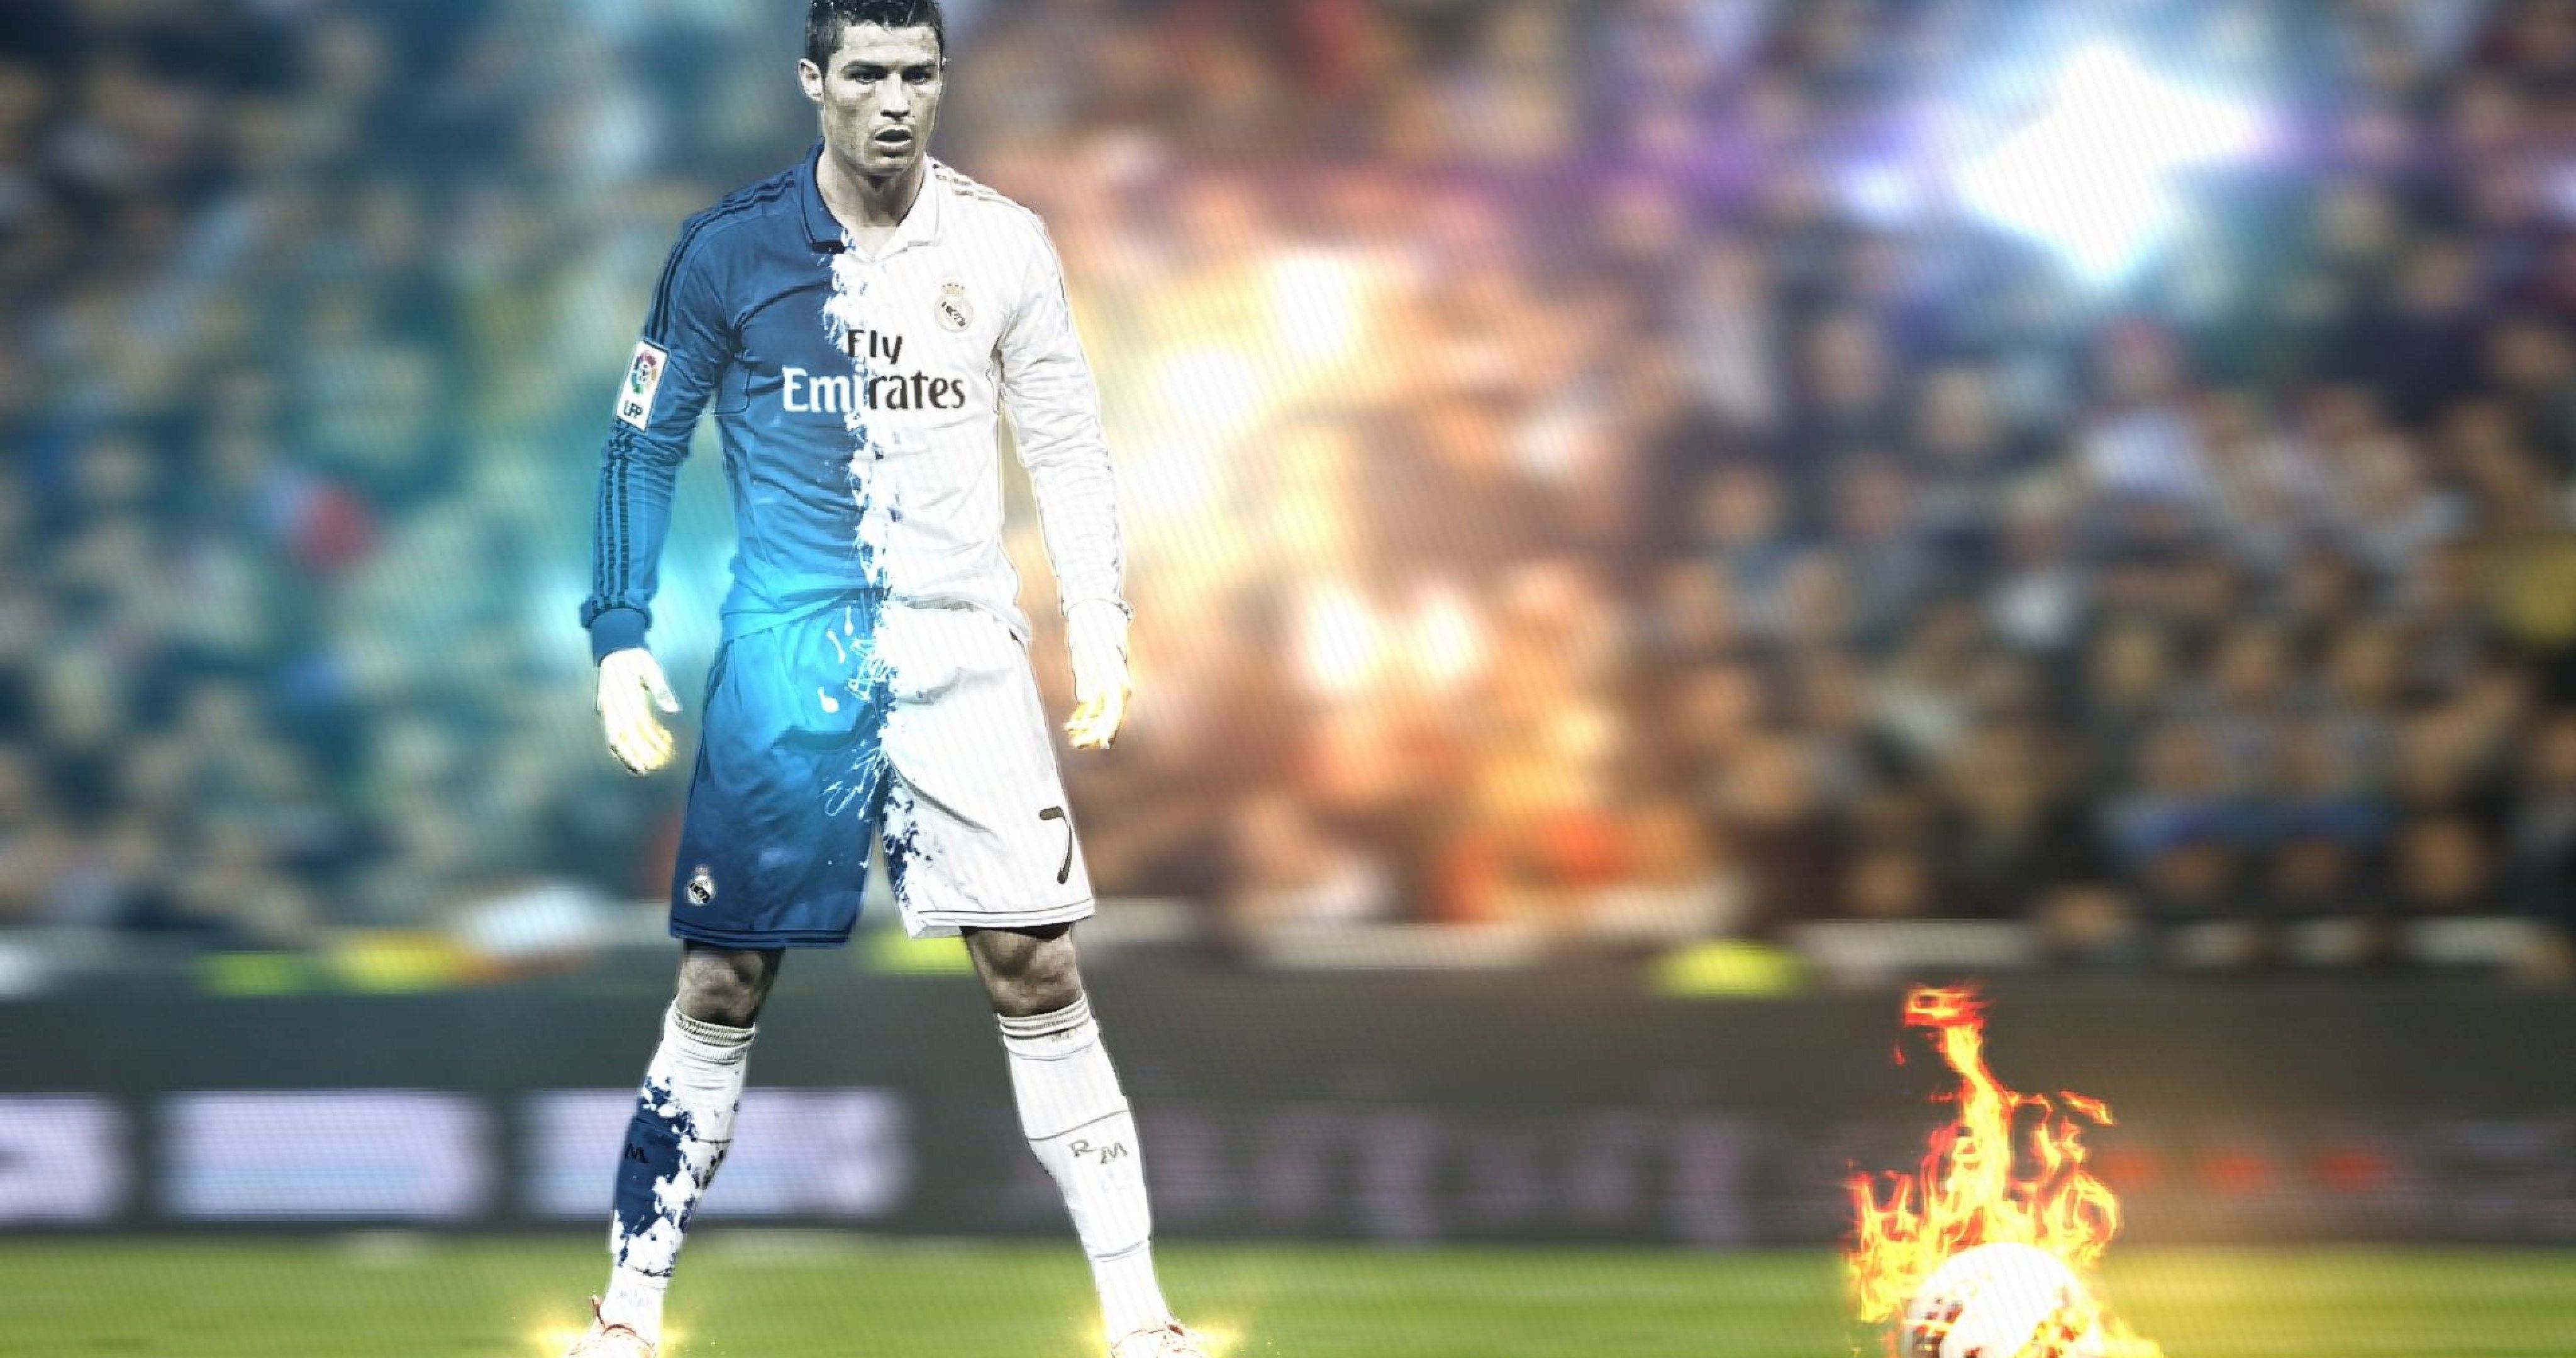 Sports Cristiano Ronaldo 4k Ultra HD Wallpaper